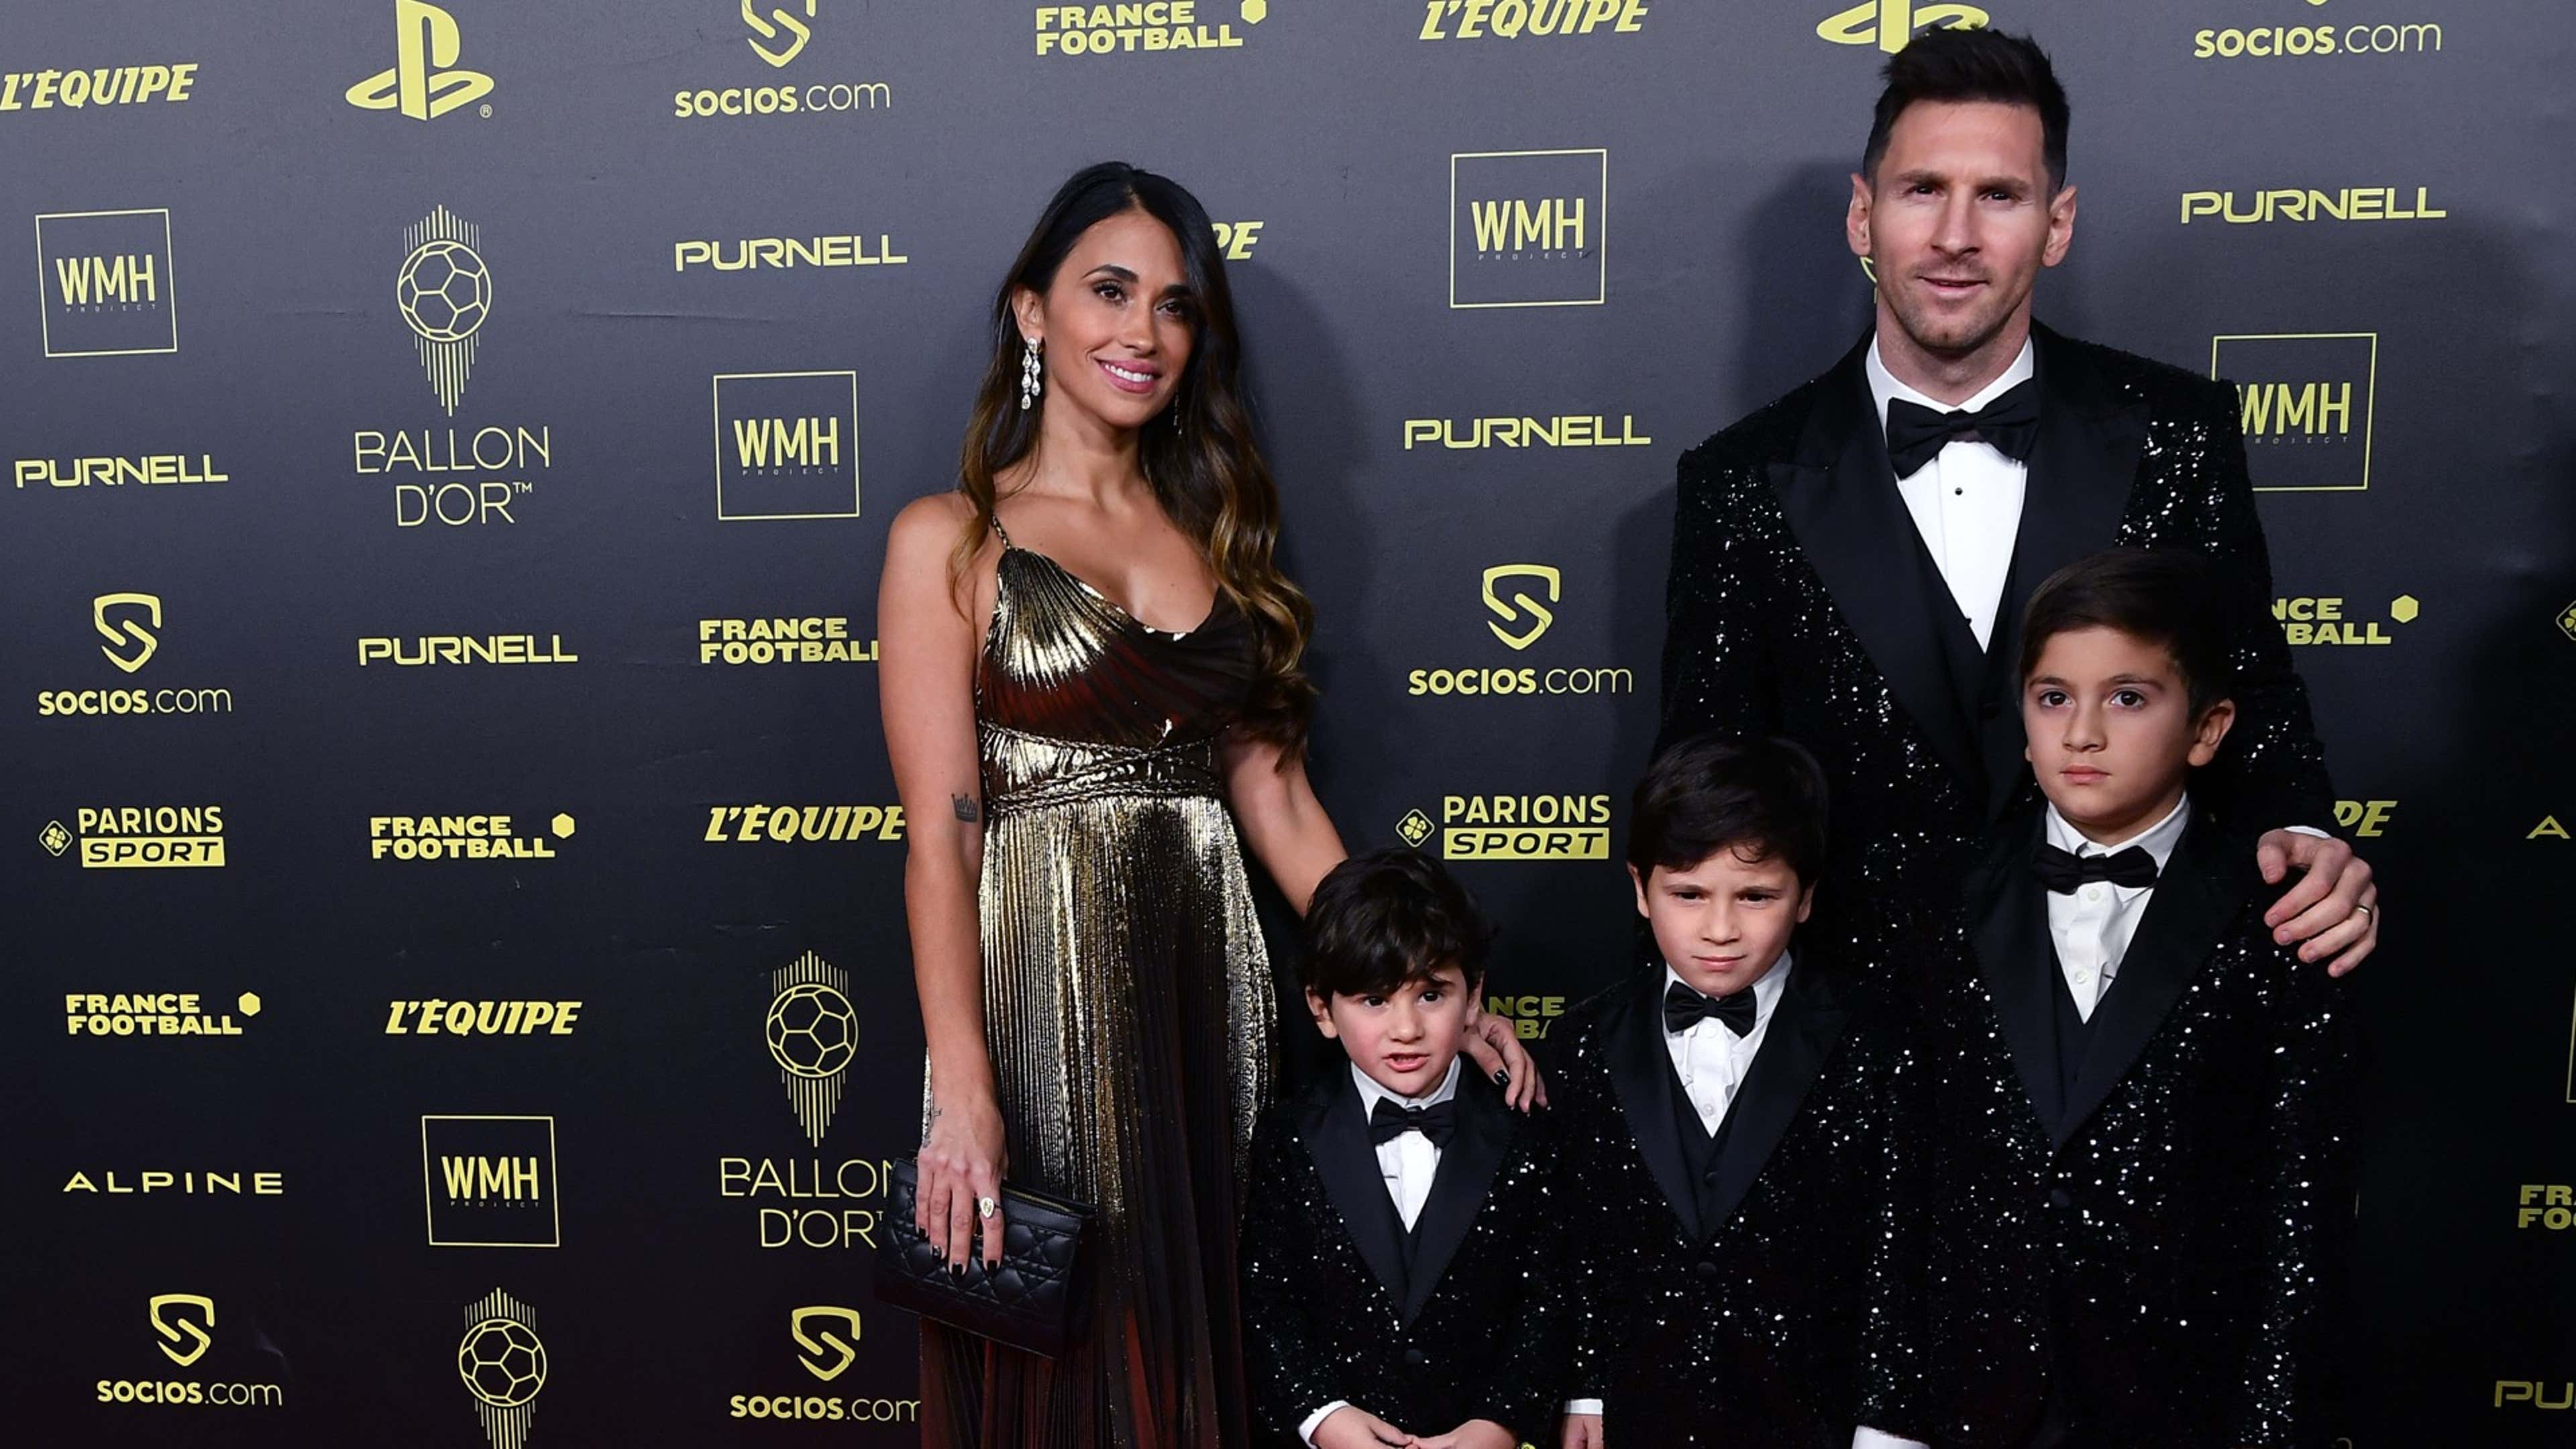 Quantos anos tem o Thiago Messi?